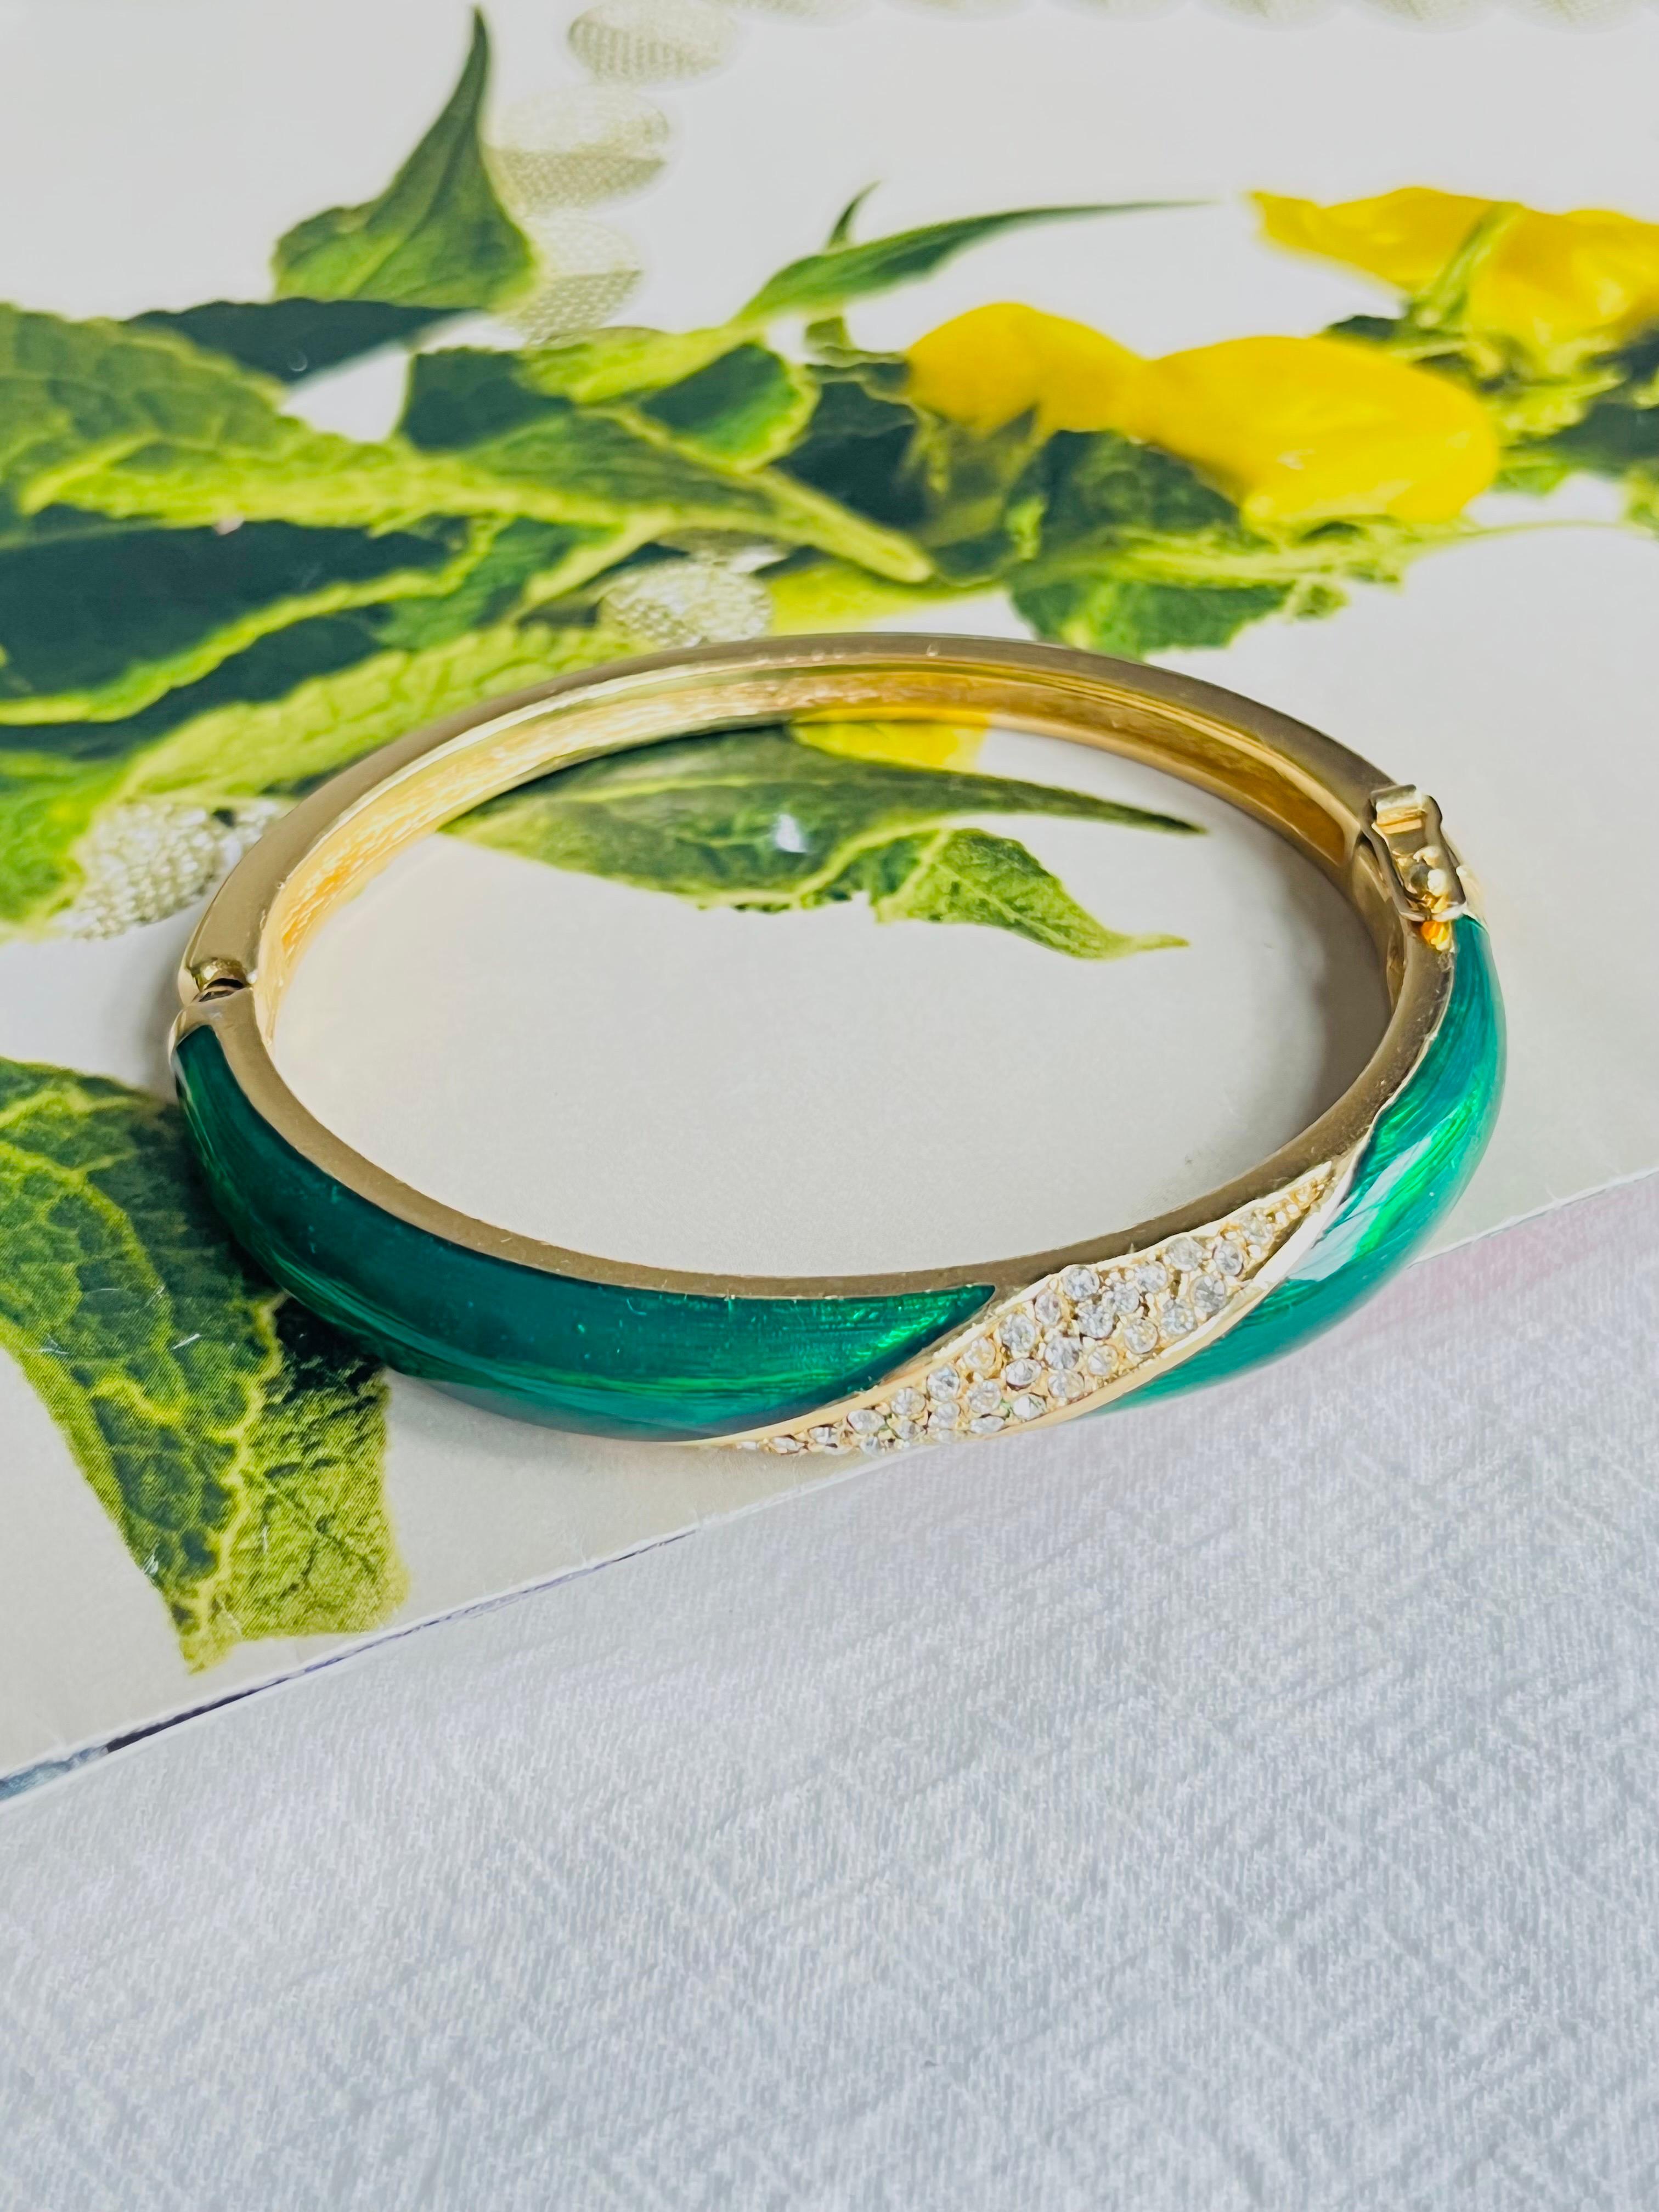 Christian Dior 1980s Vintage Smaragd Grün Emaille Kristalle Manschette Armreif Armband, Gold-Ton

Ein sehr schönes Armband von Chr. DIOR, signiert auf der Rückseite. Selten zu finden. 

Sehr guter Zustand. 100% echt.

MATERIAL: Vergoldetes Metall,